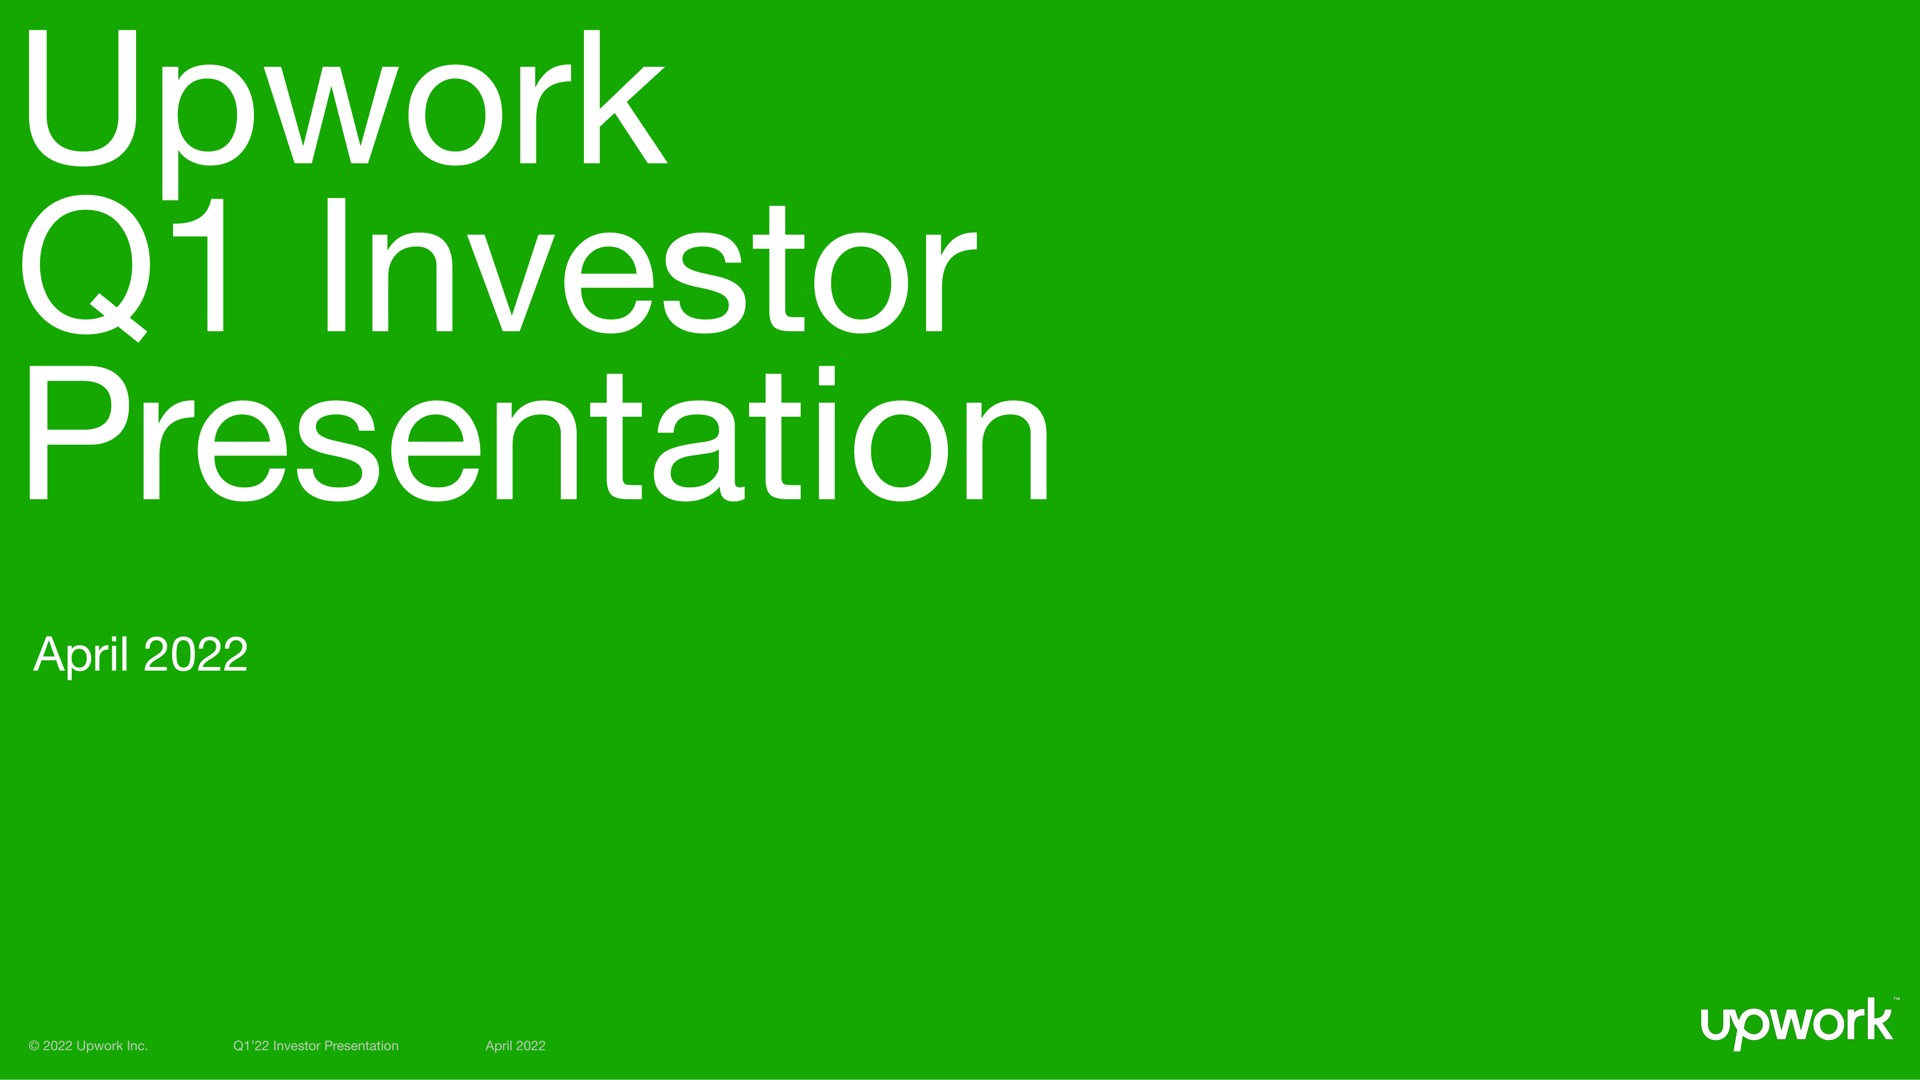 upwork investor presentation vol a | Upwork